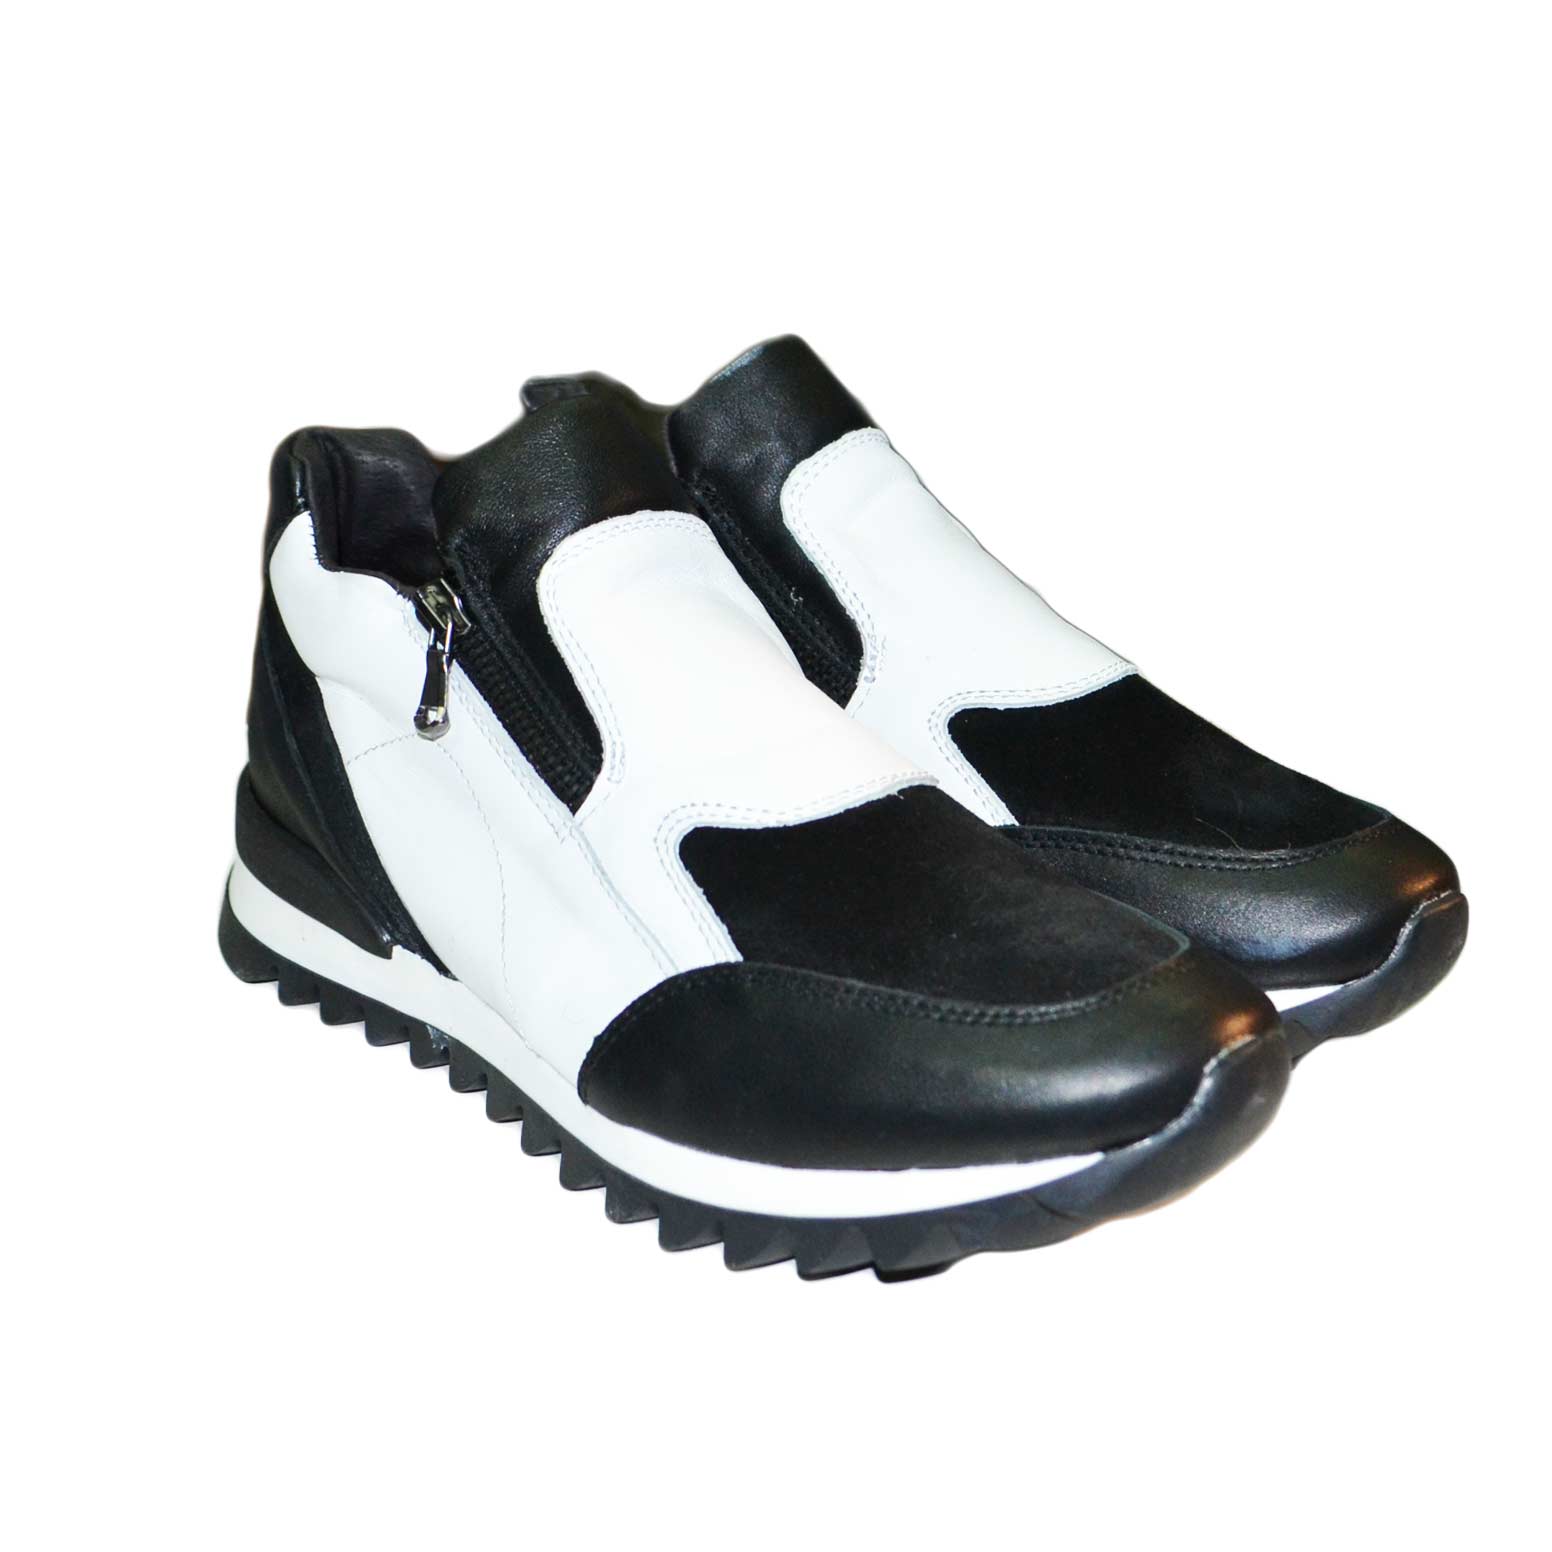 Sneakers bassa donna con zip bicolore vera pelle made in italy trapuntata .